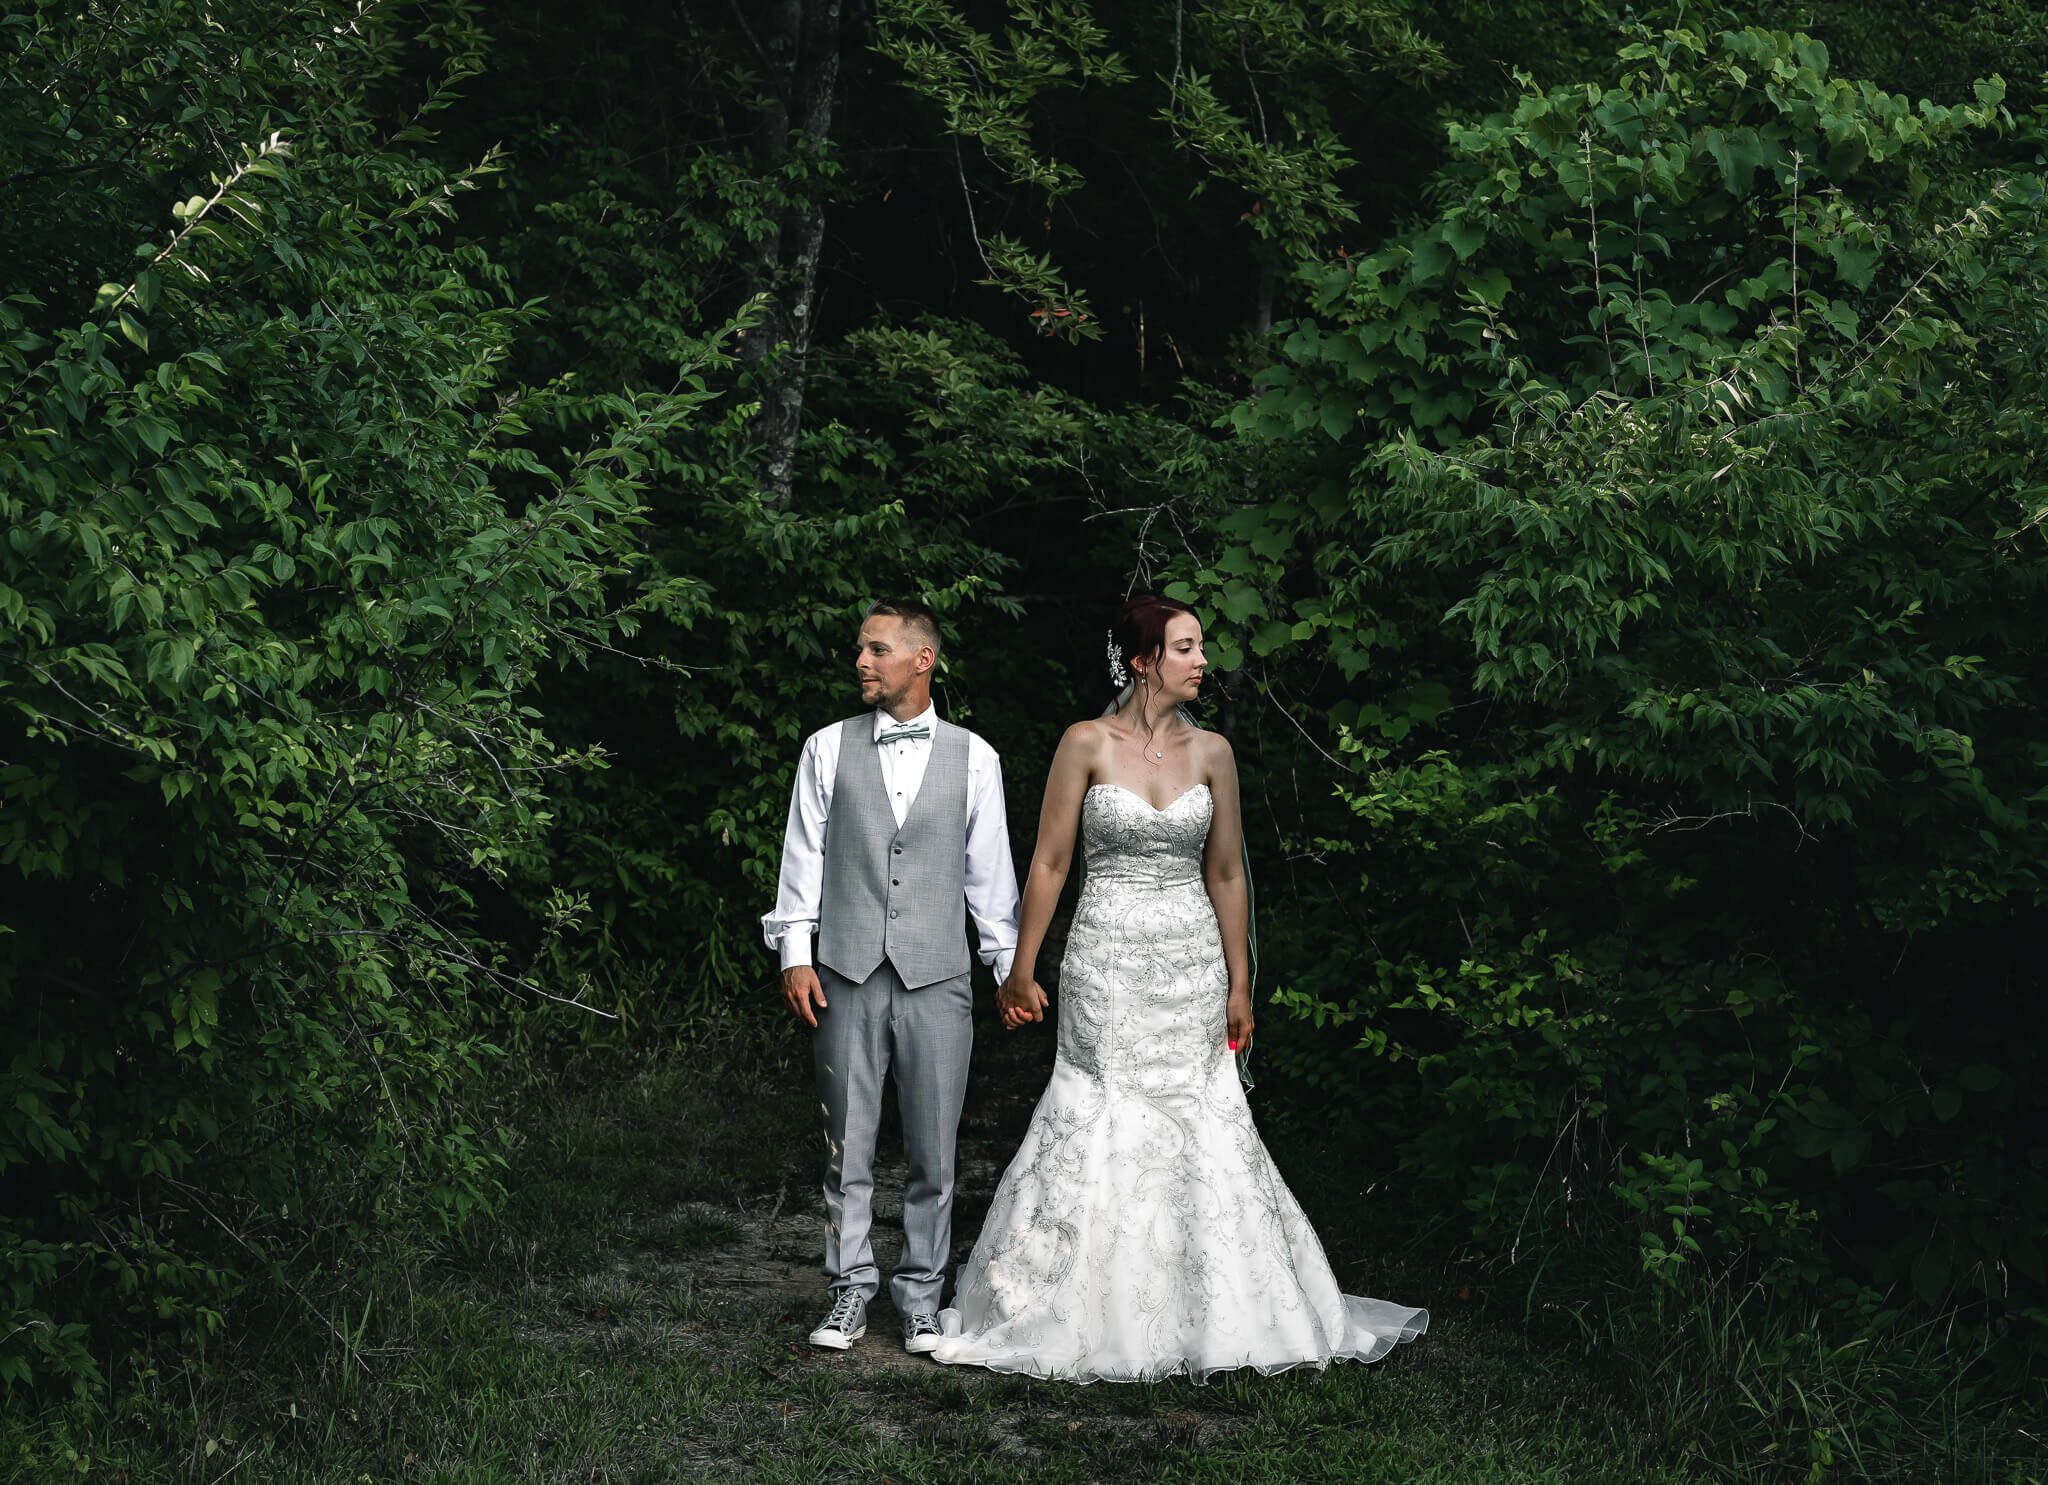 retro-bride-groom-poses-woods.jpg